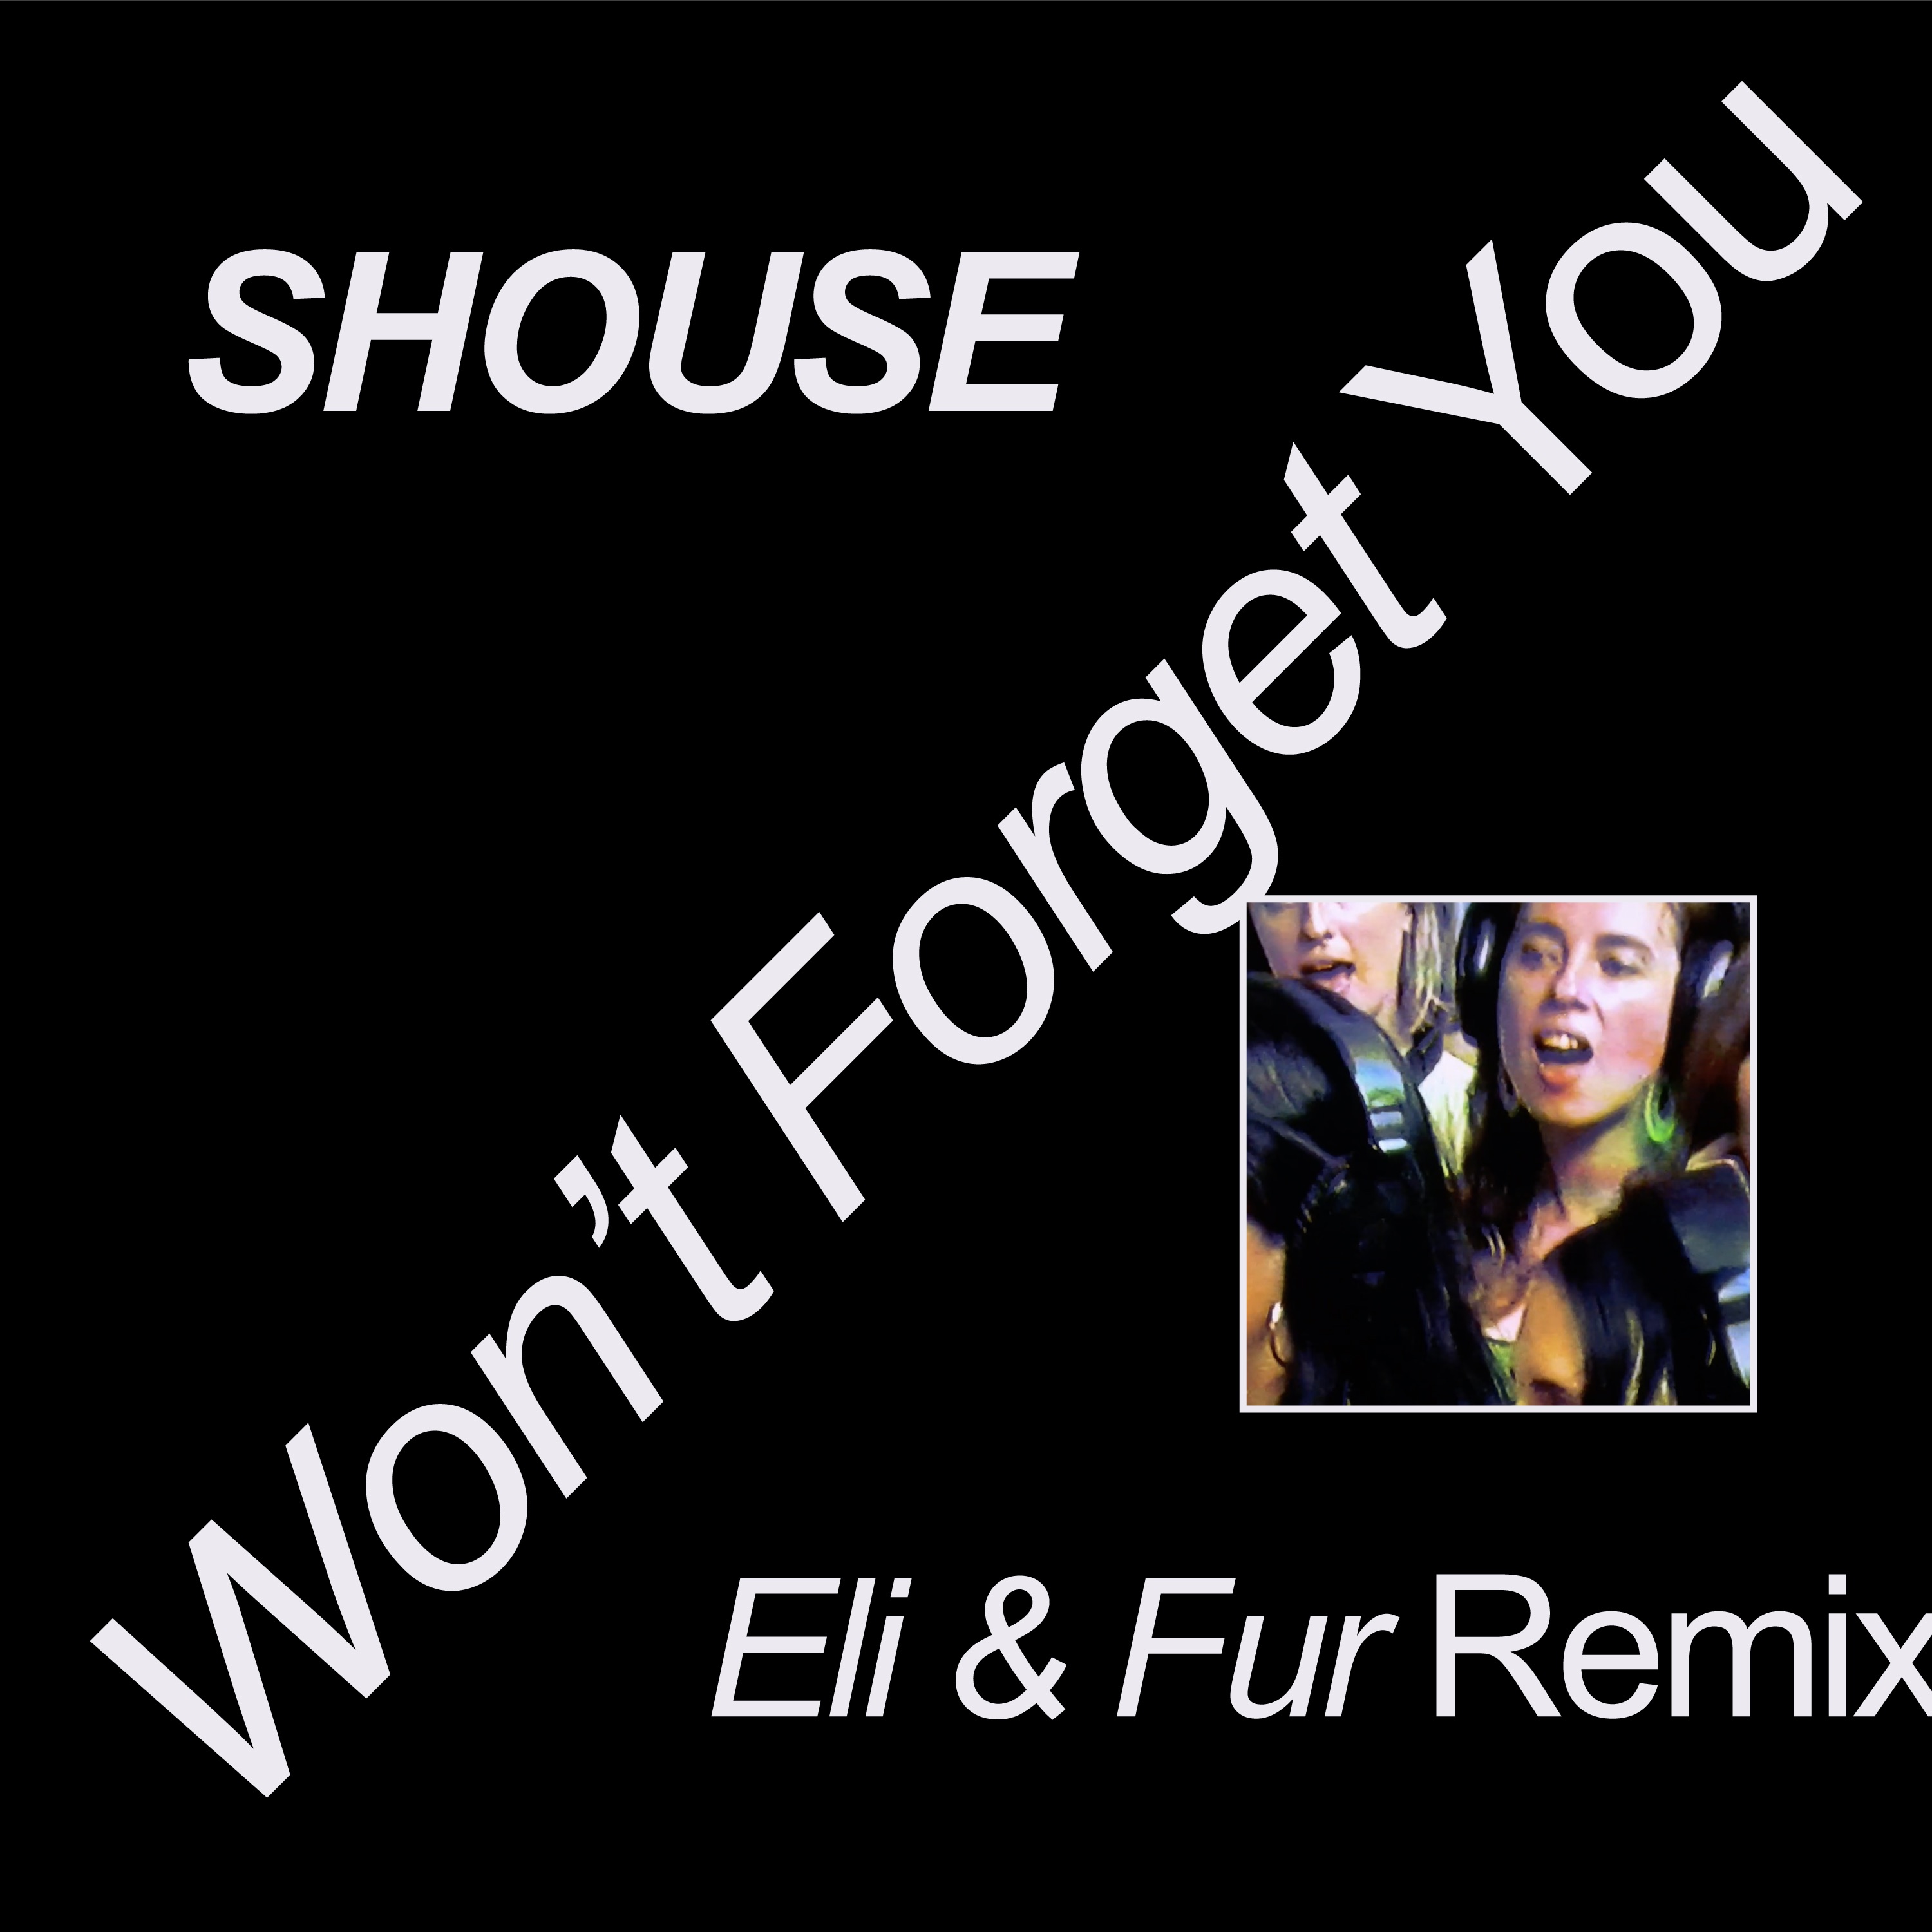 ഡൗൺലോഡ് Shouse - Won't Forget You (Eli & Fur Remix)